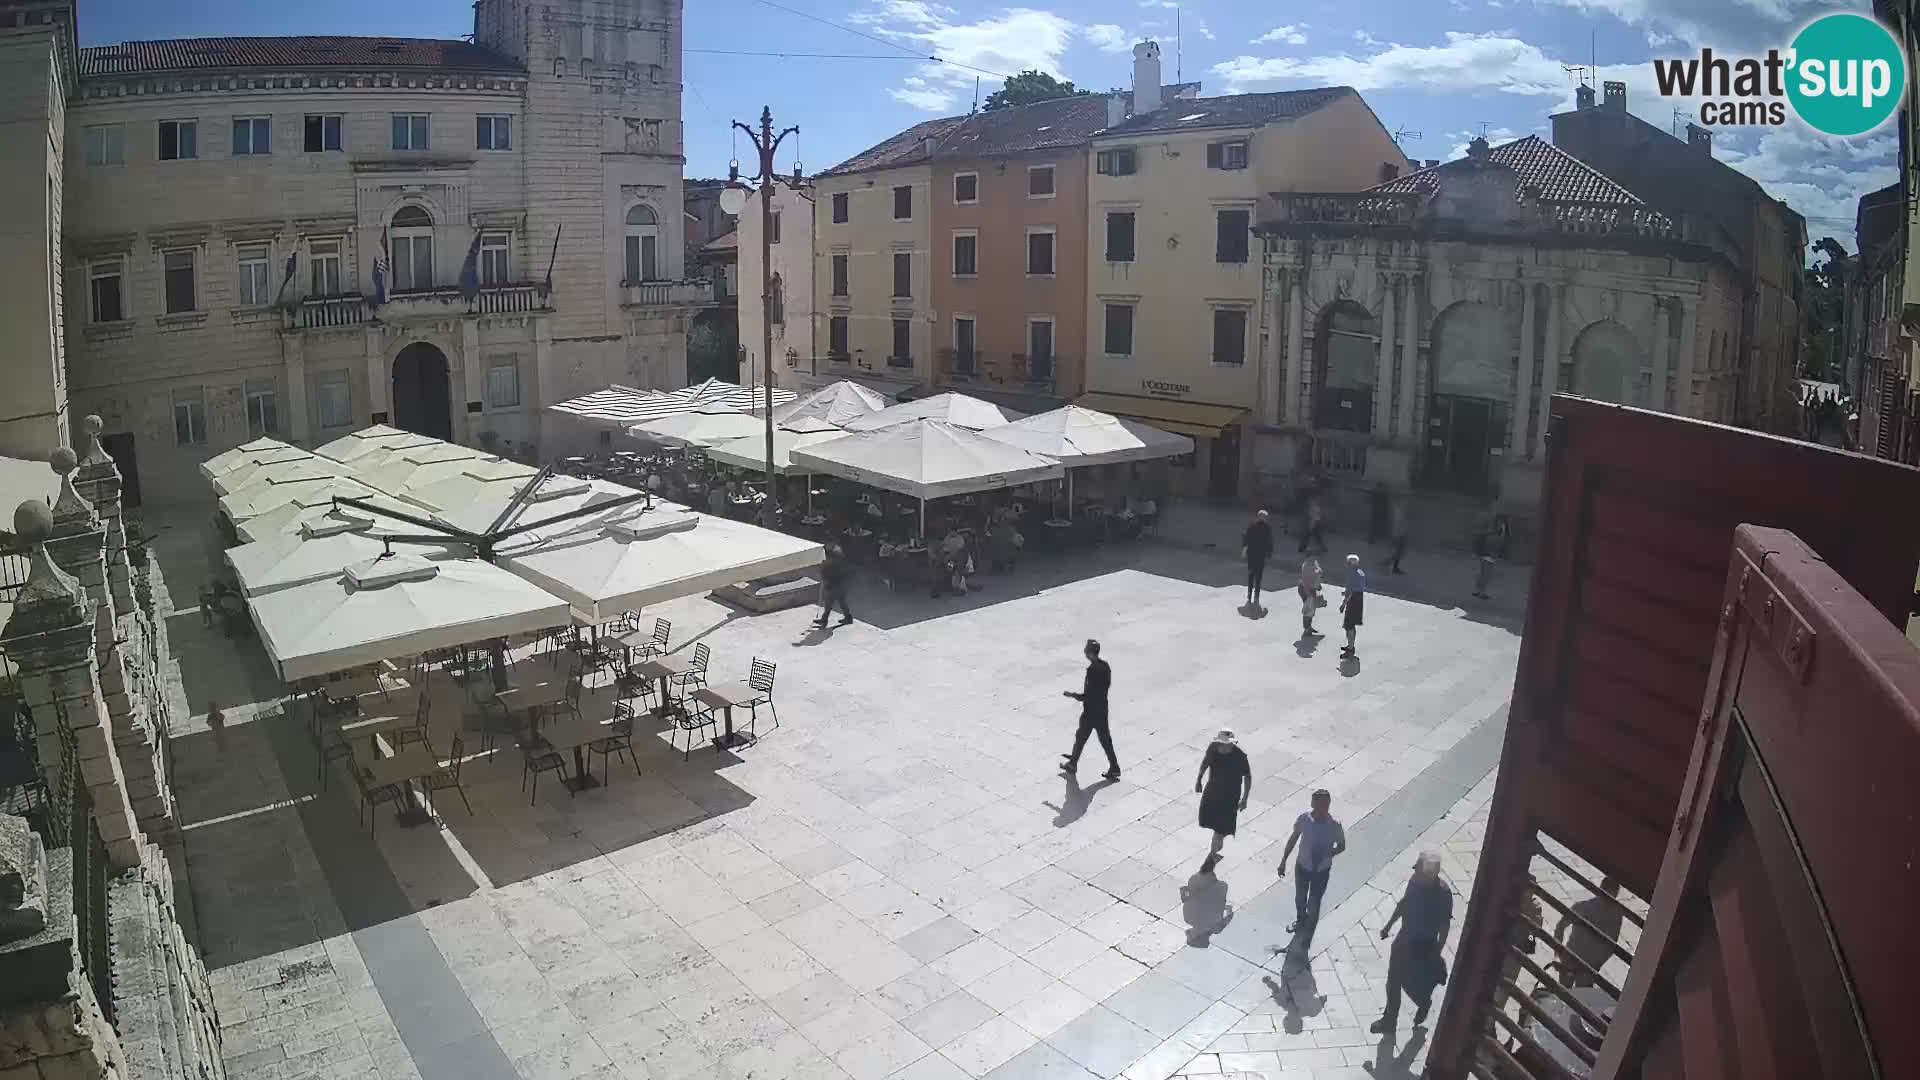 Zadar – Narodni trg “People’s square”